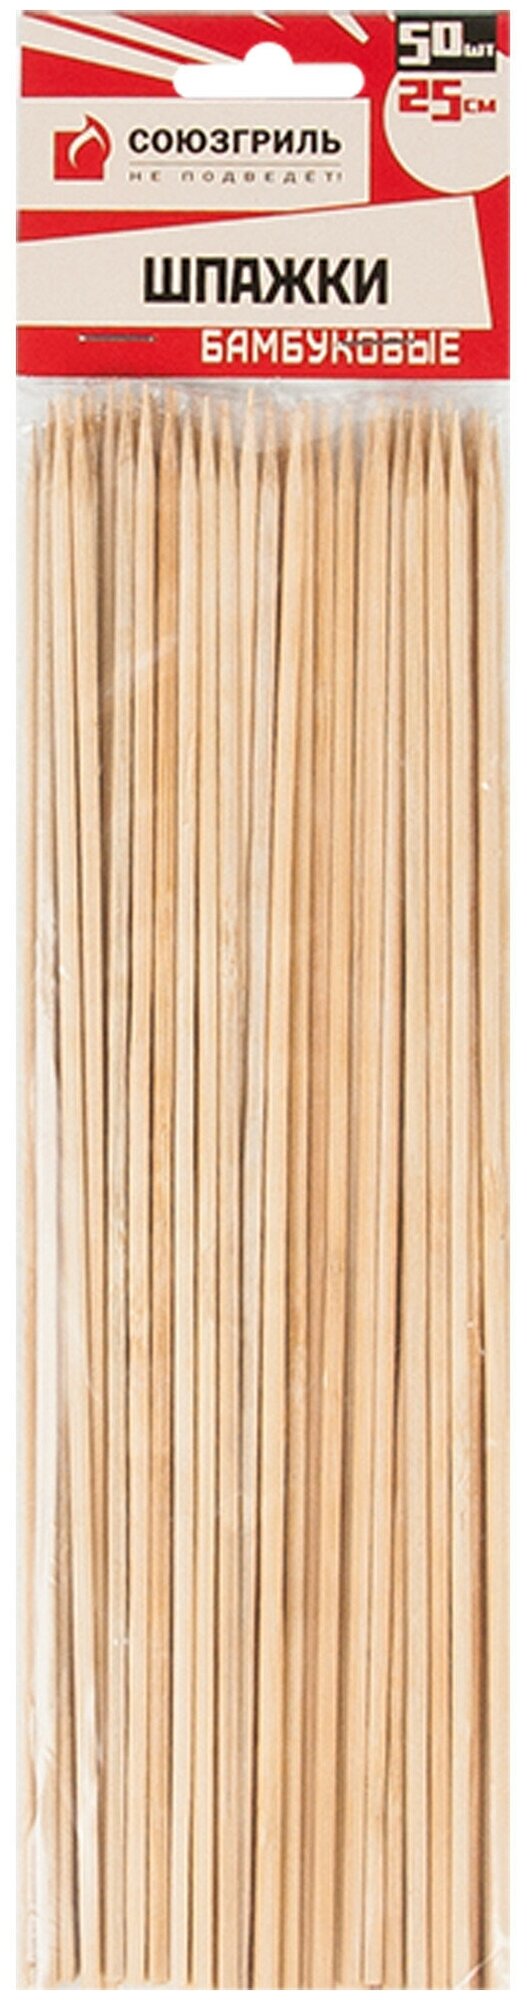 Шампуры для шашлыка бамбуковые ROYALGRILL 25 см, 100 шт - фотография № 1